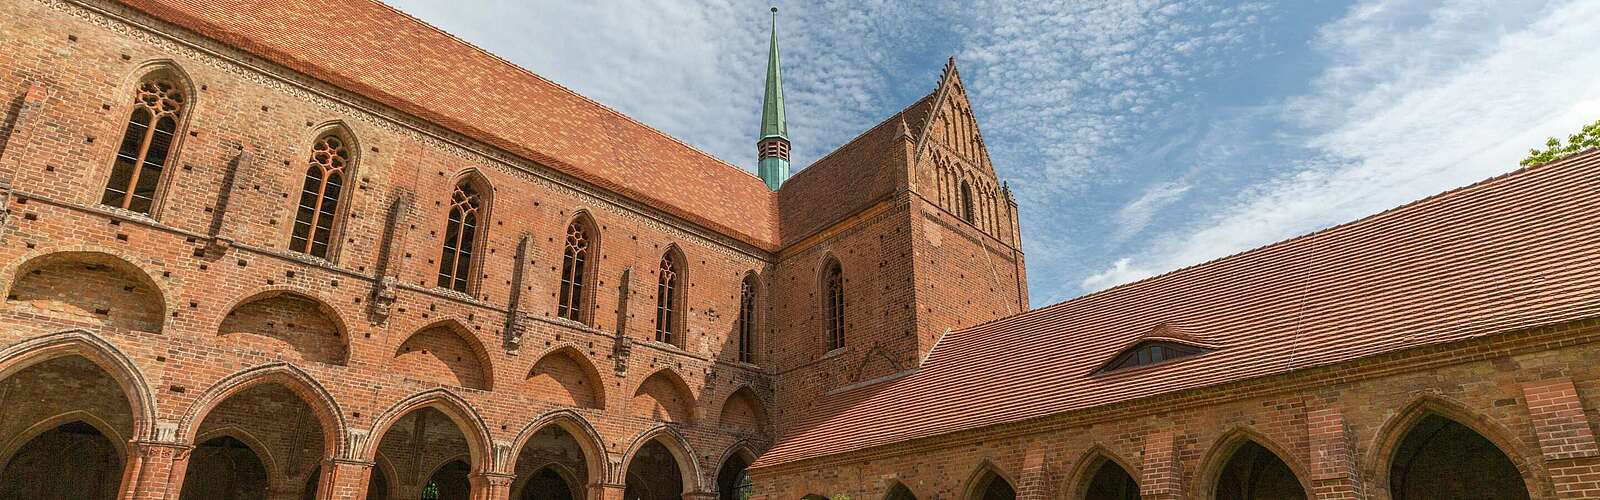 Kloster Chorin,
        
    

        Foto: TMB-Fotoarchiv/Steffen Lehmann